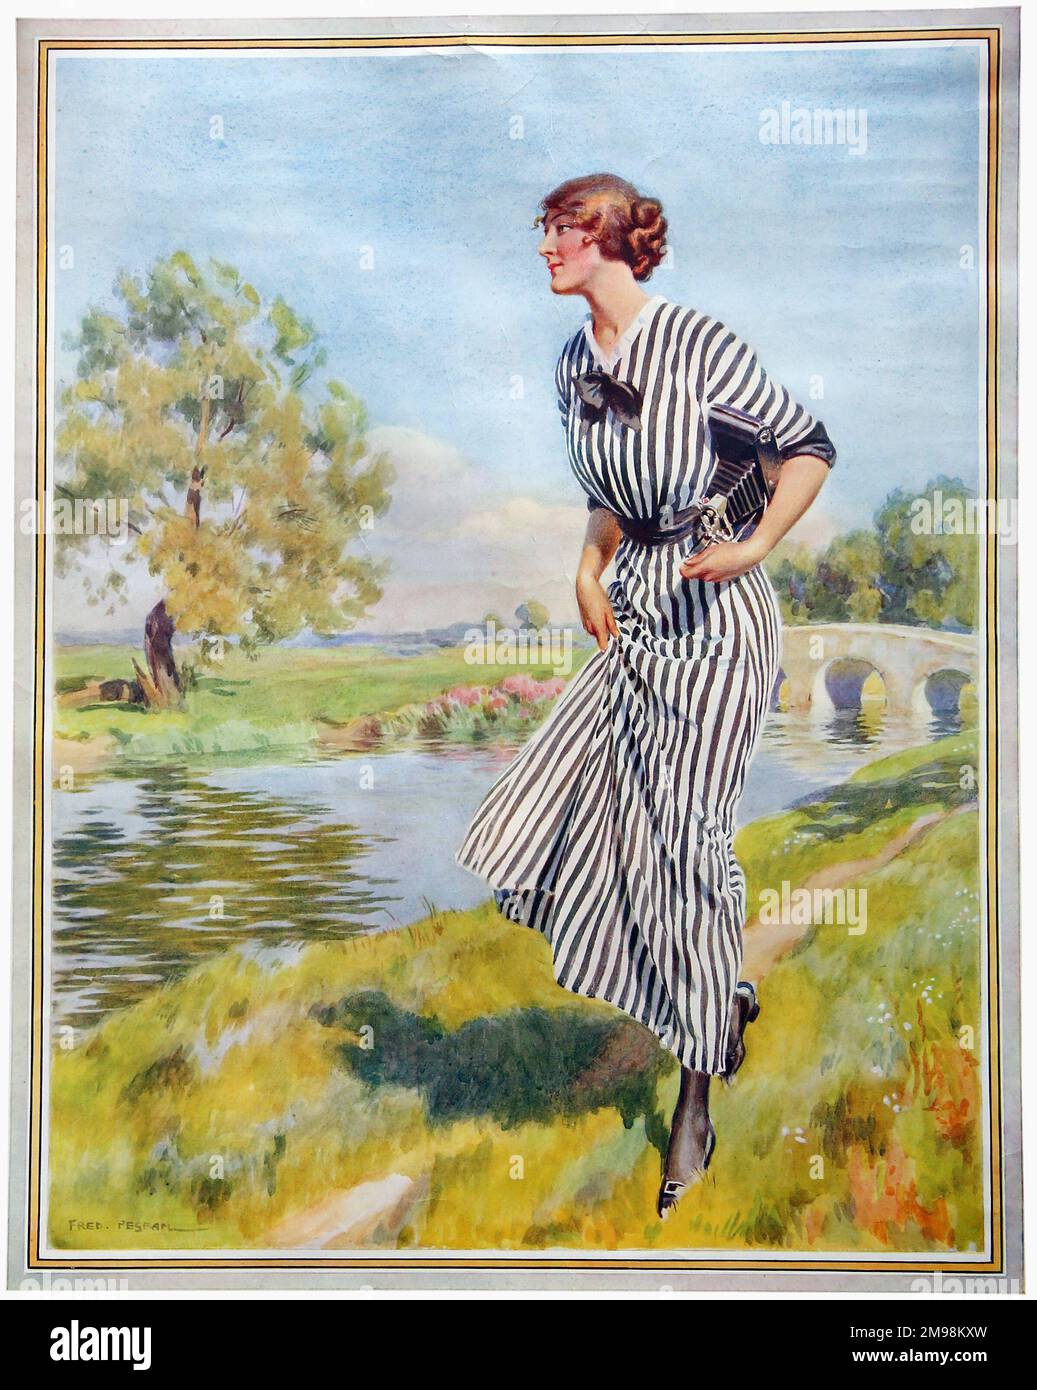 Poster Art, la Kodak Girl by a River dans sa robe à rayures noires et blanches. Banque D'Images